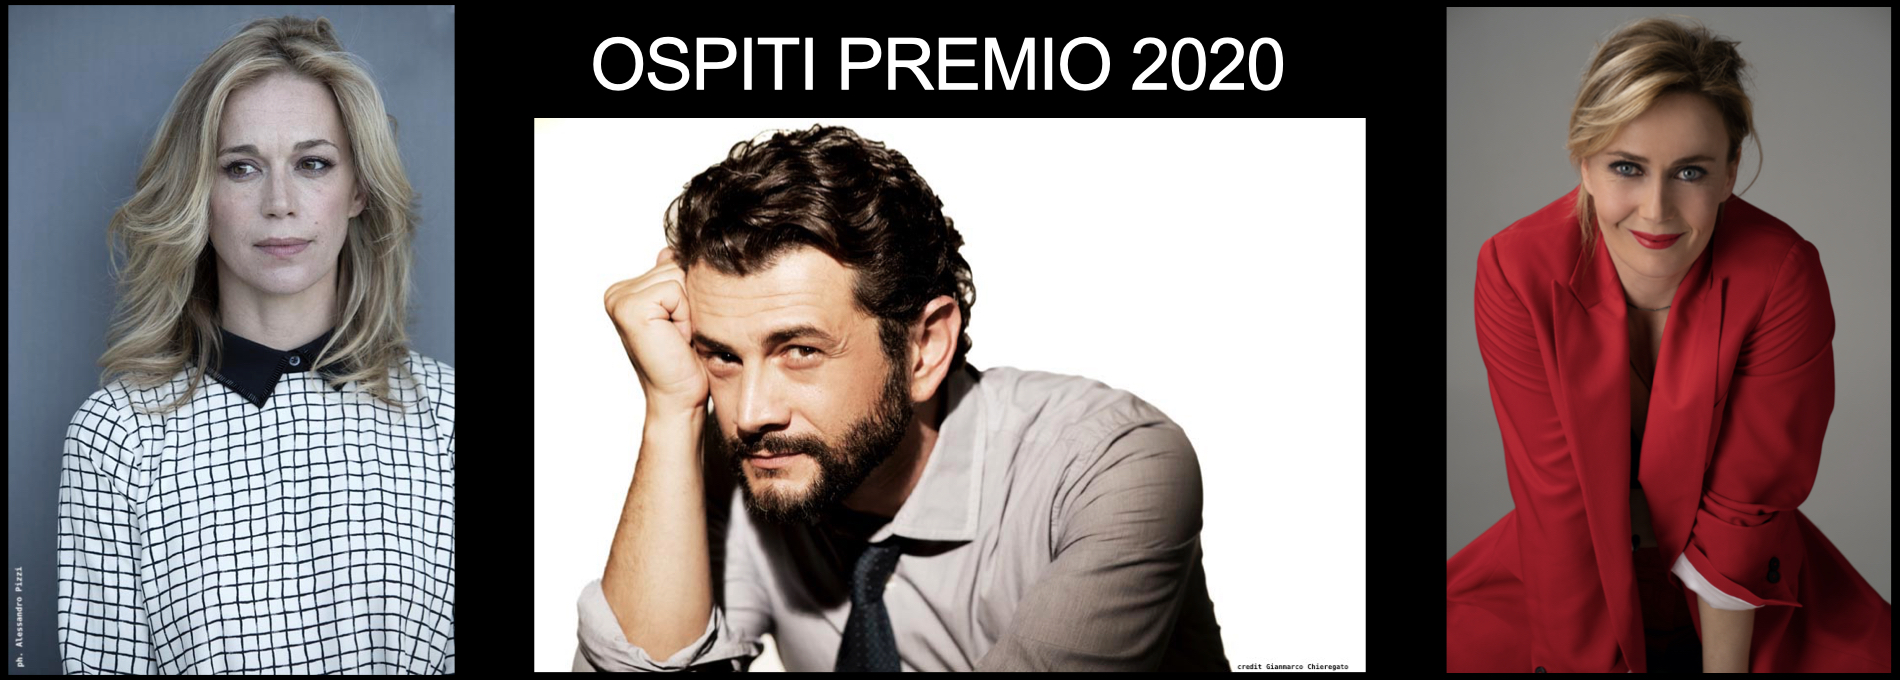 OSPITI PREMIO 2020